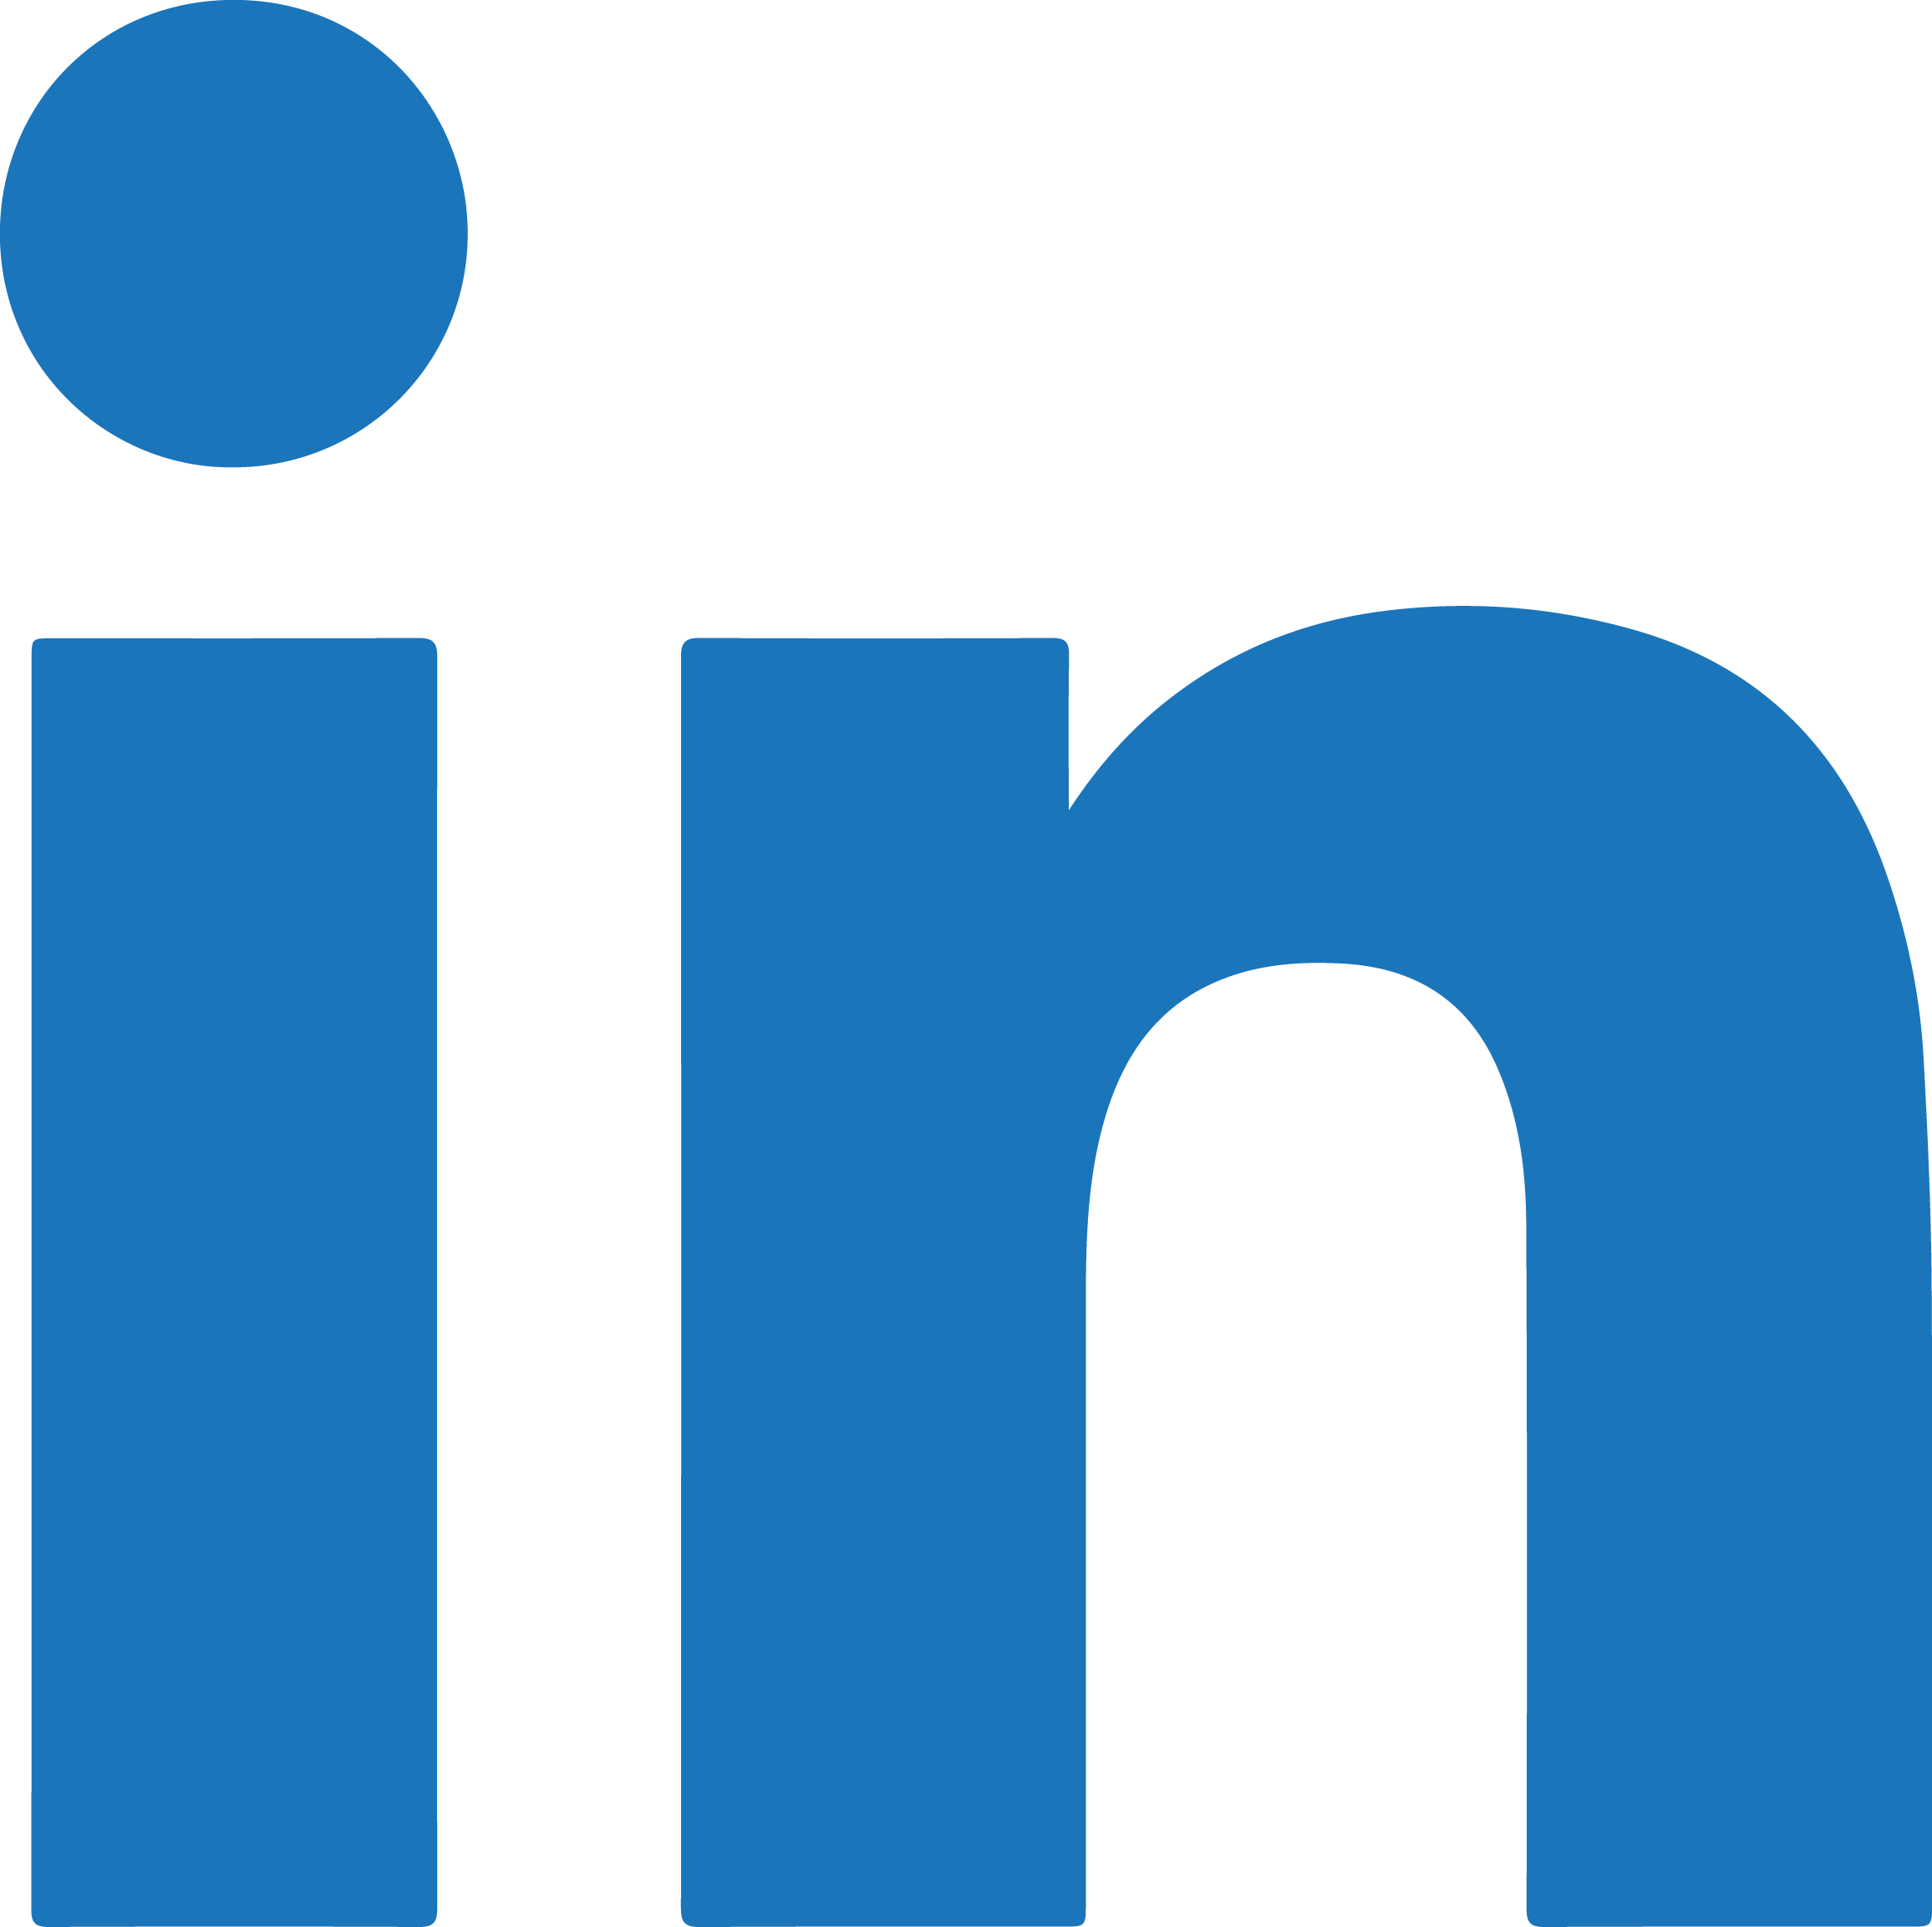 Linked N Logo - LinkedIn logo PNG images free download